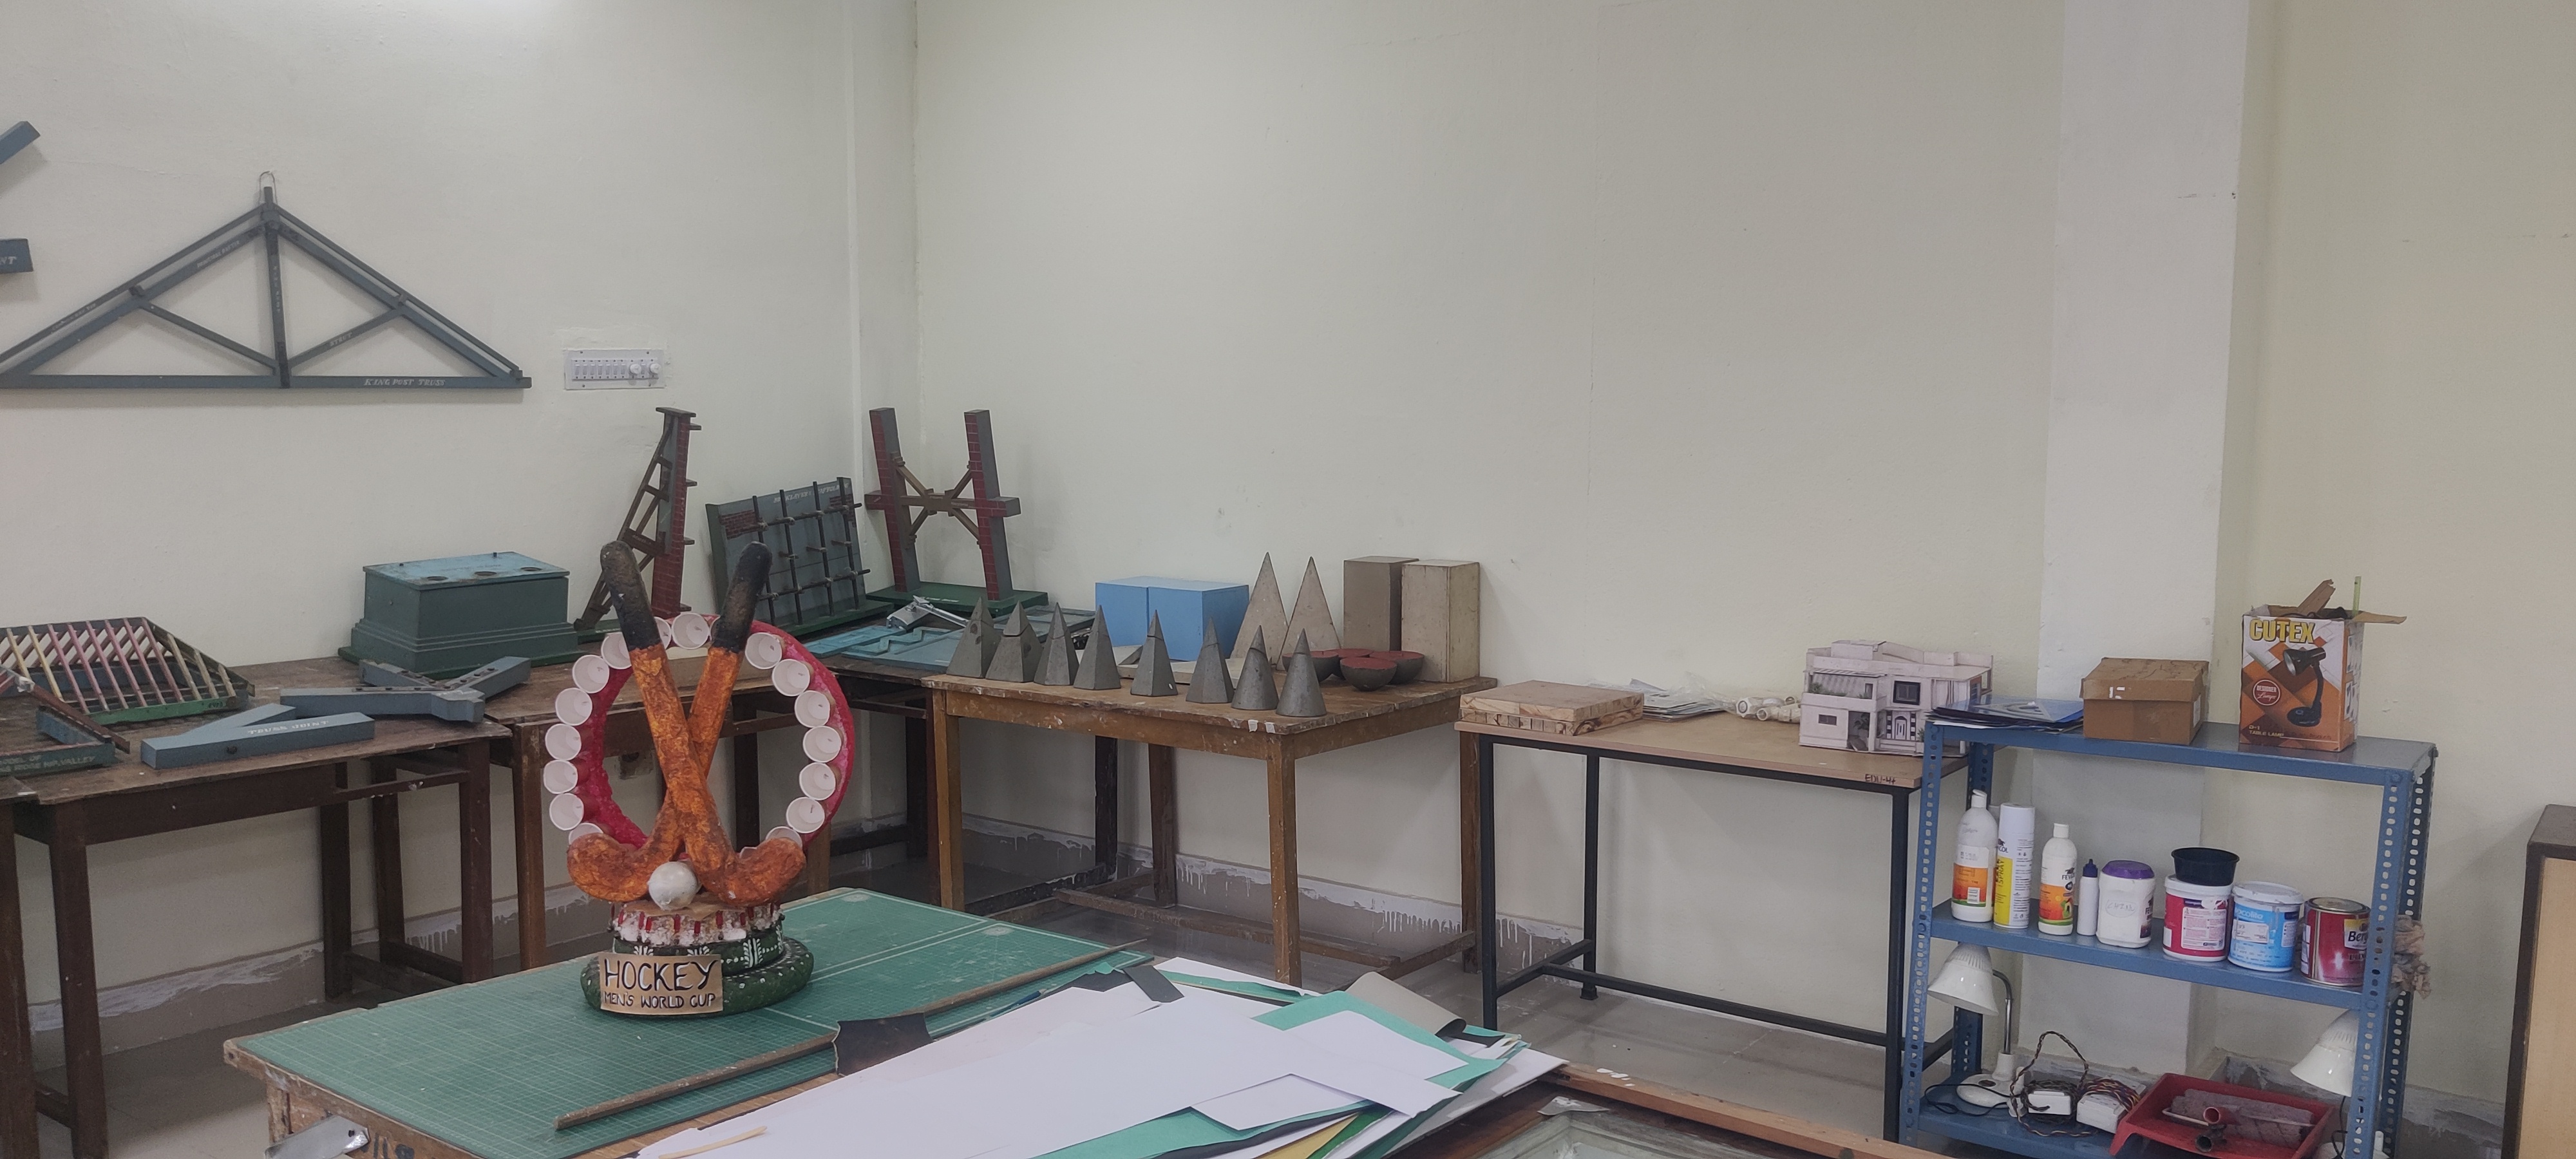 Model Making Room & Material Museum